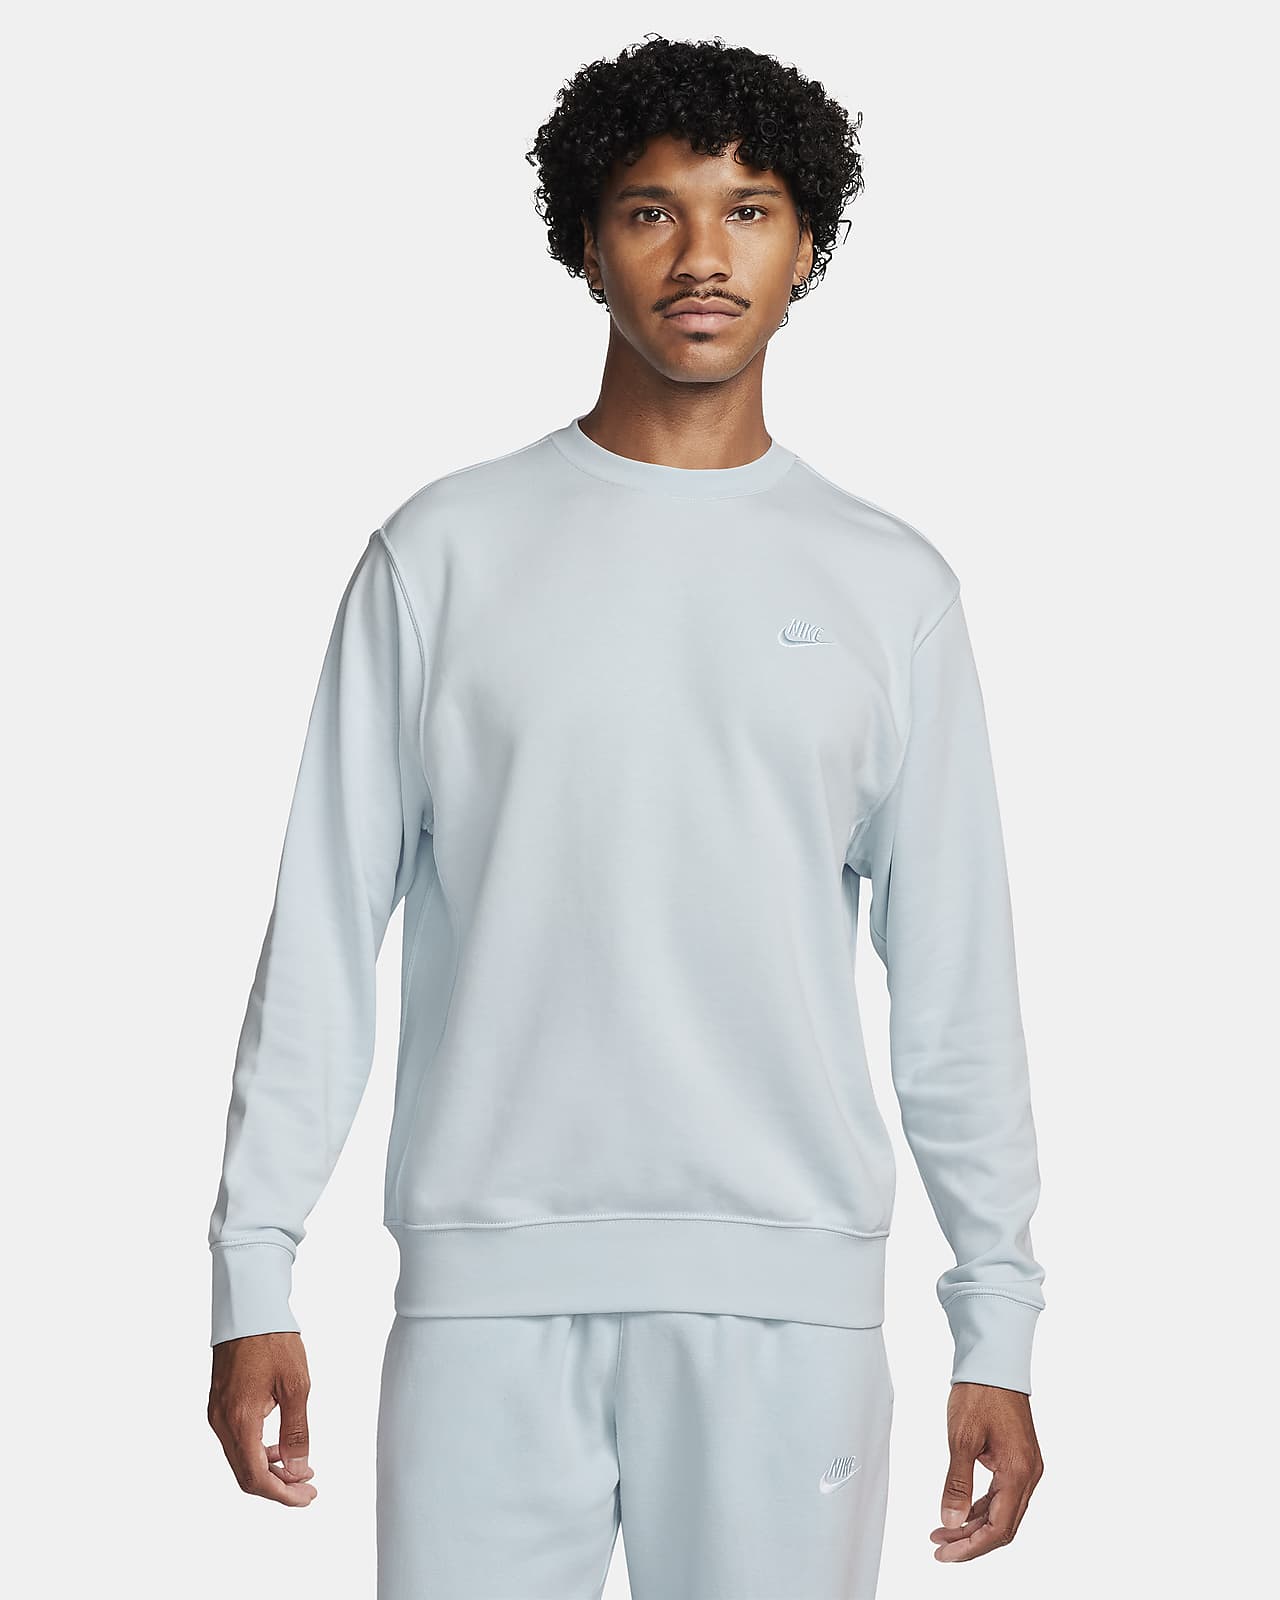 Sweat-shirt Nike Sportswear pour Homme - BV2666